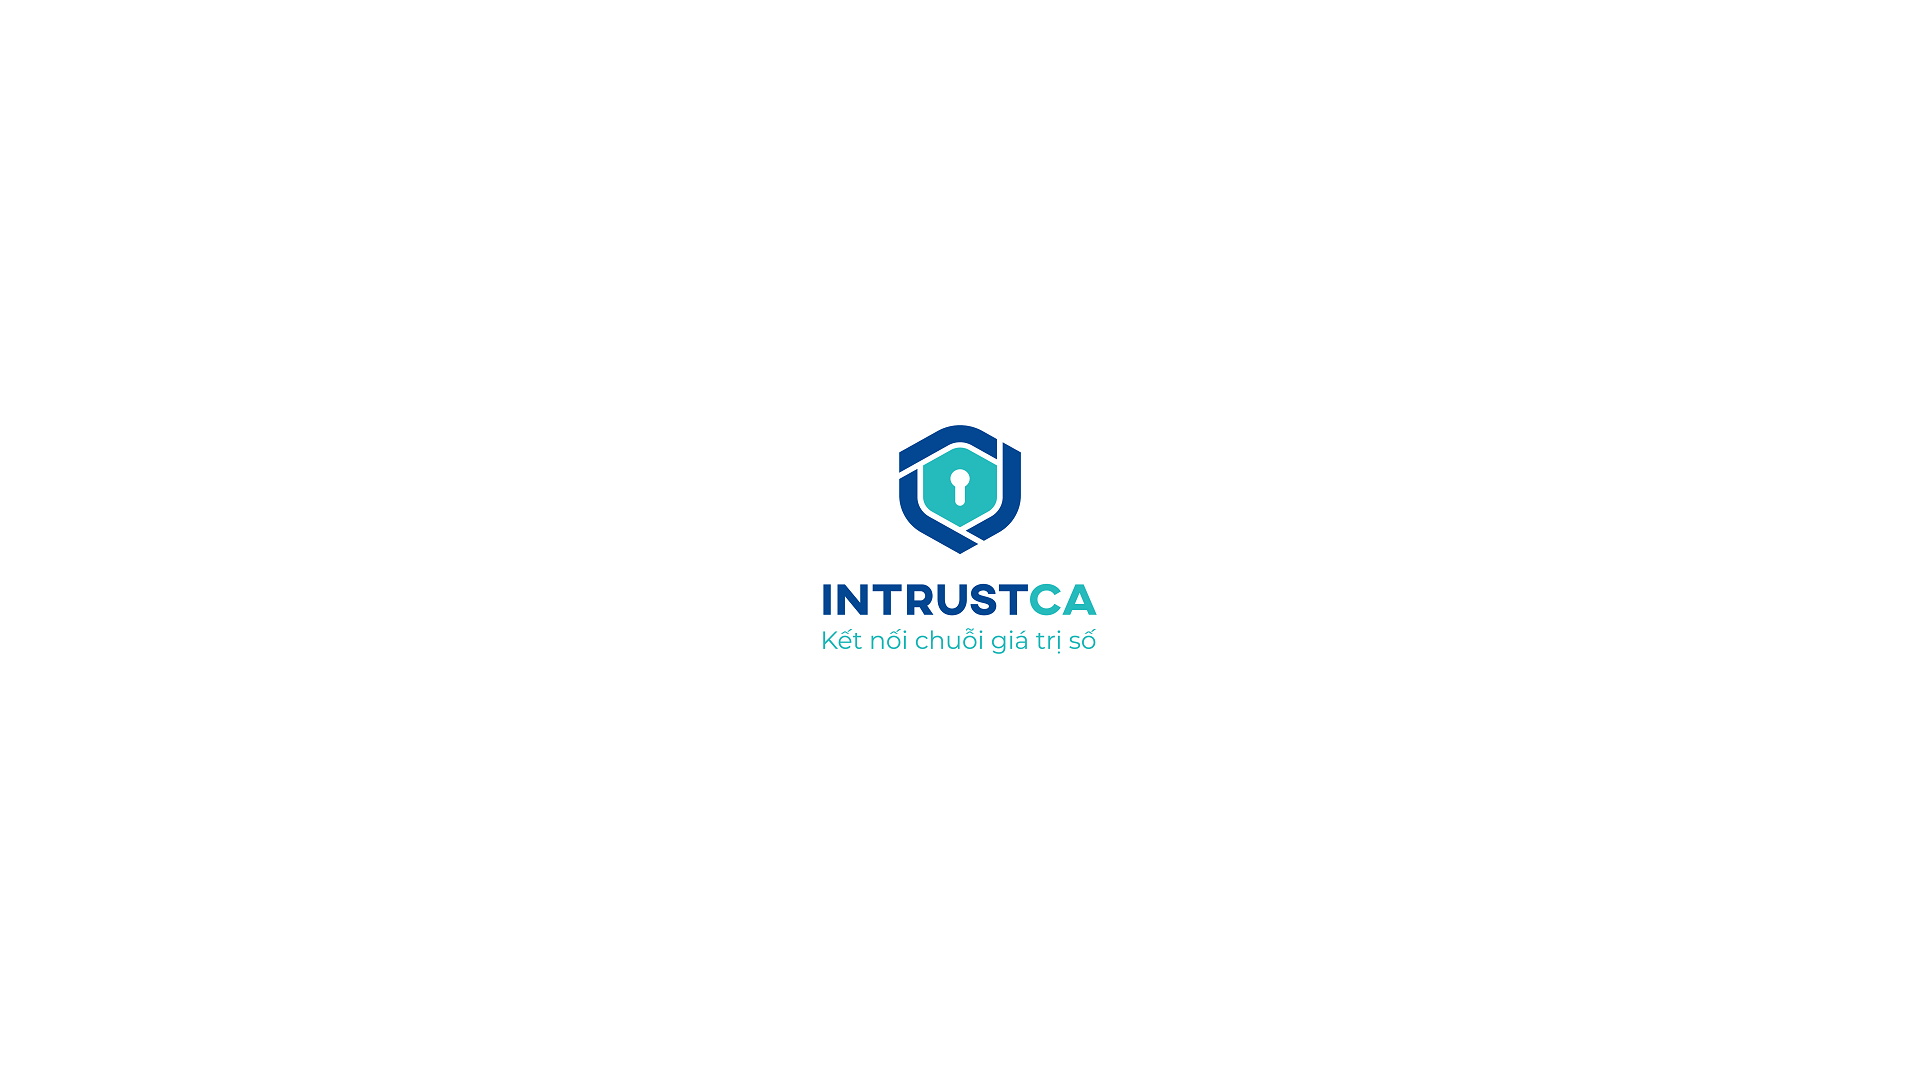 Dự án thiết kế logo, thiết kế nhận diện thương hiệu INTRUSTCA - 3